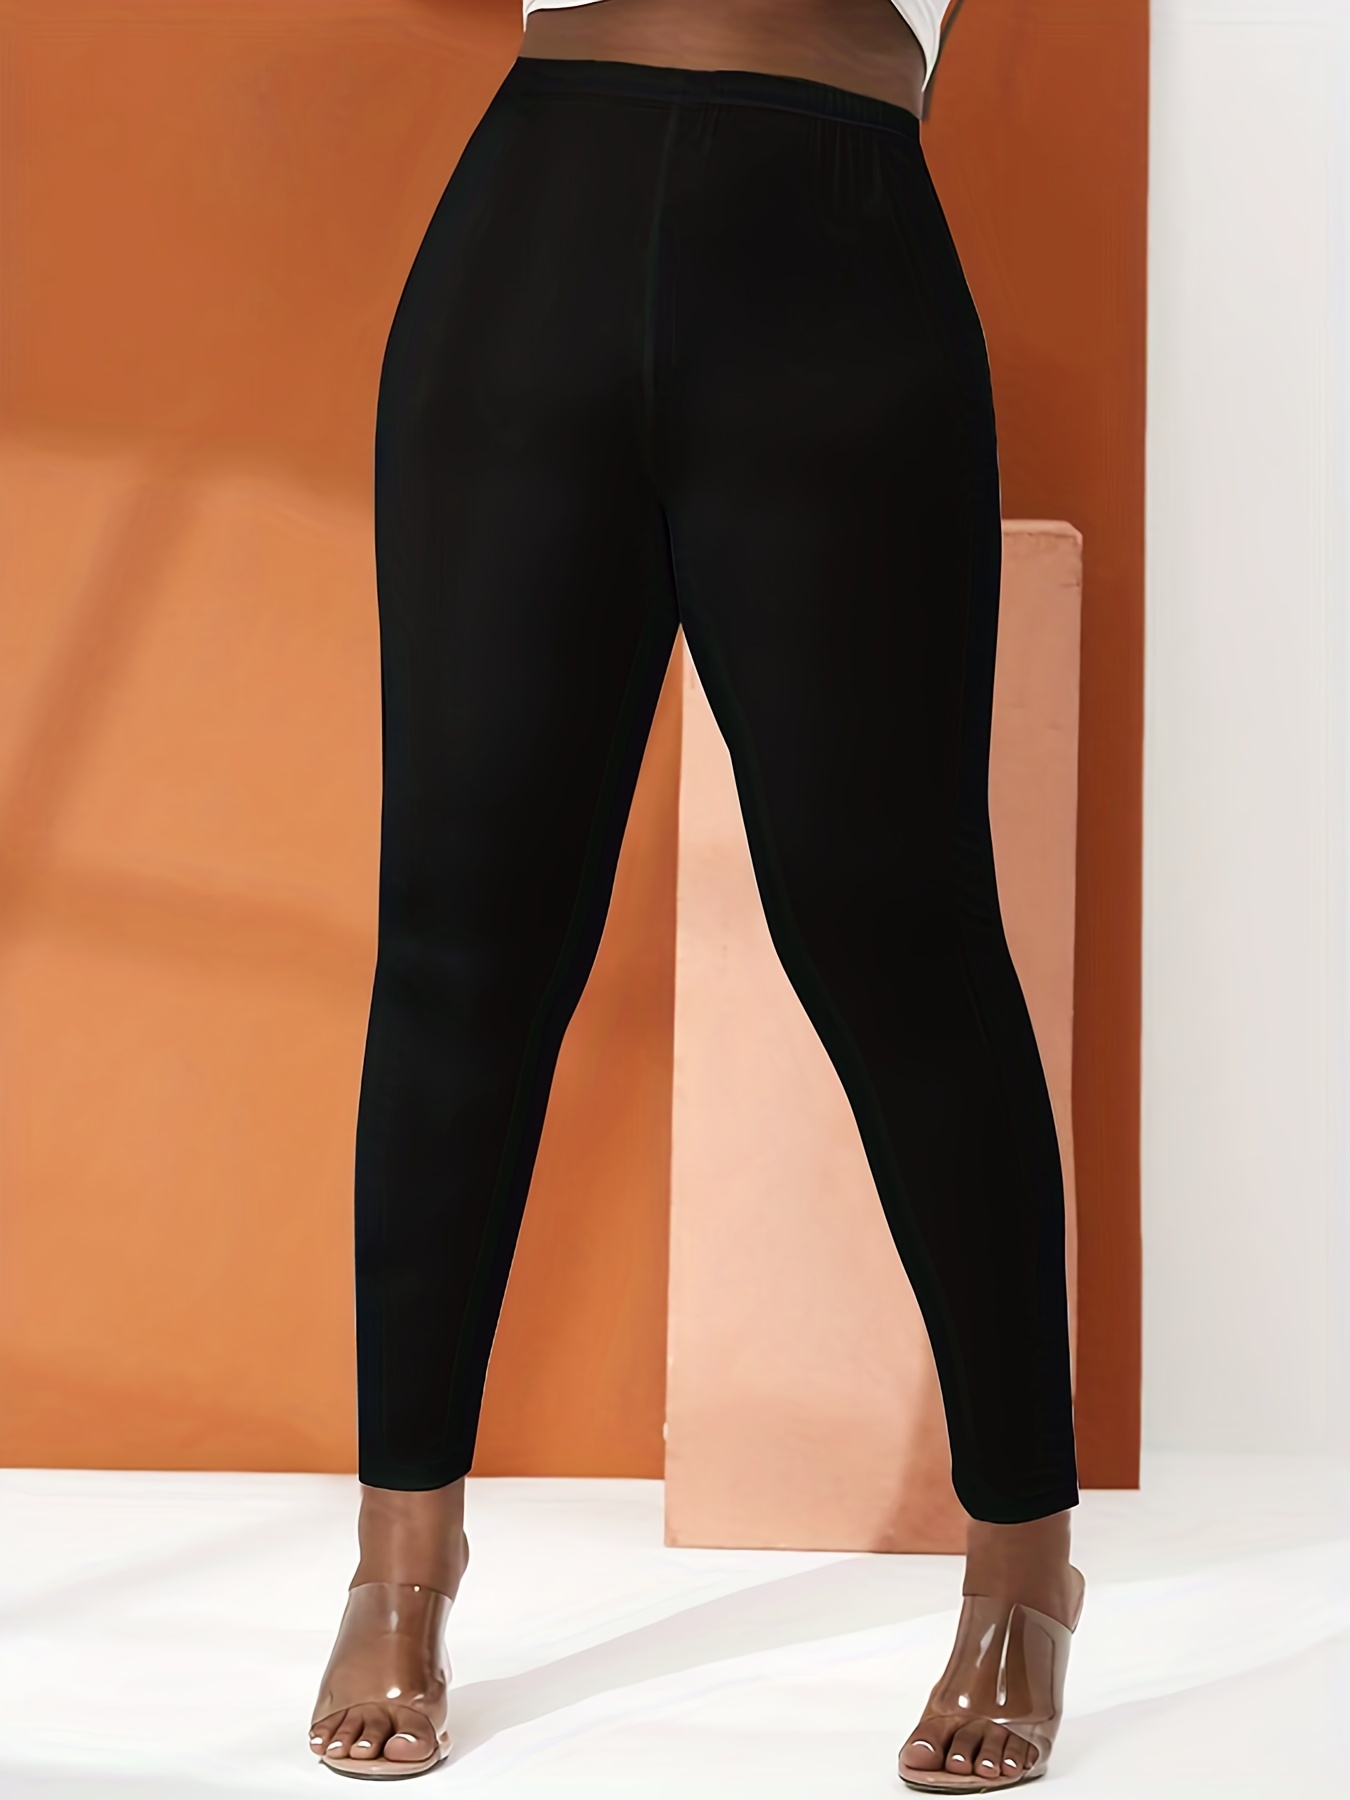 Yoga Pants Comfy Skinny High Waisted Gym Pants For Women (S) Black